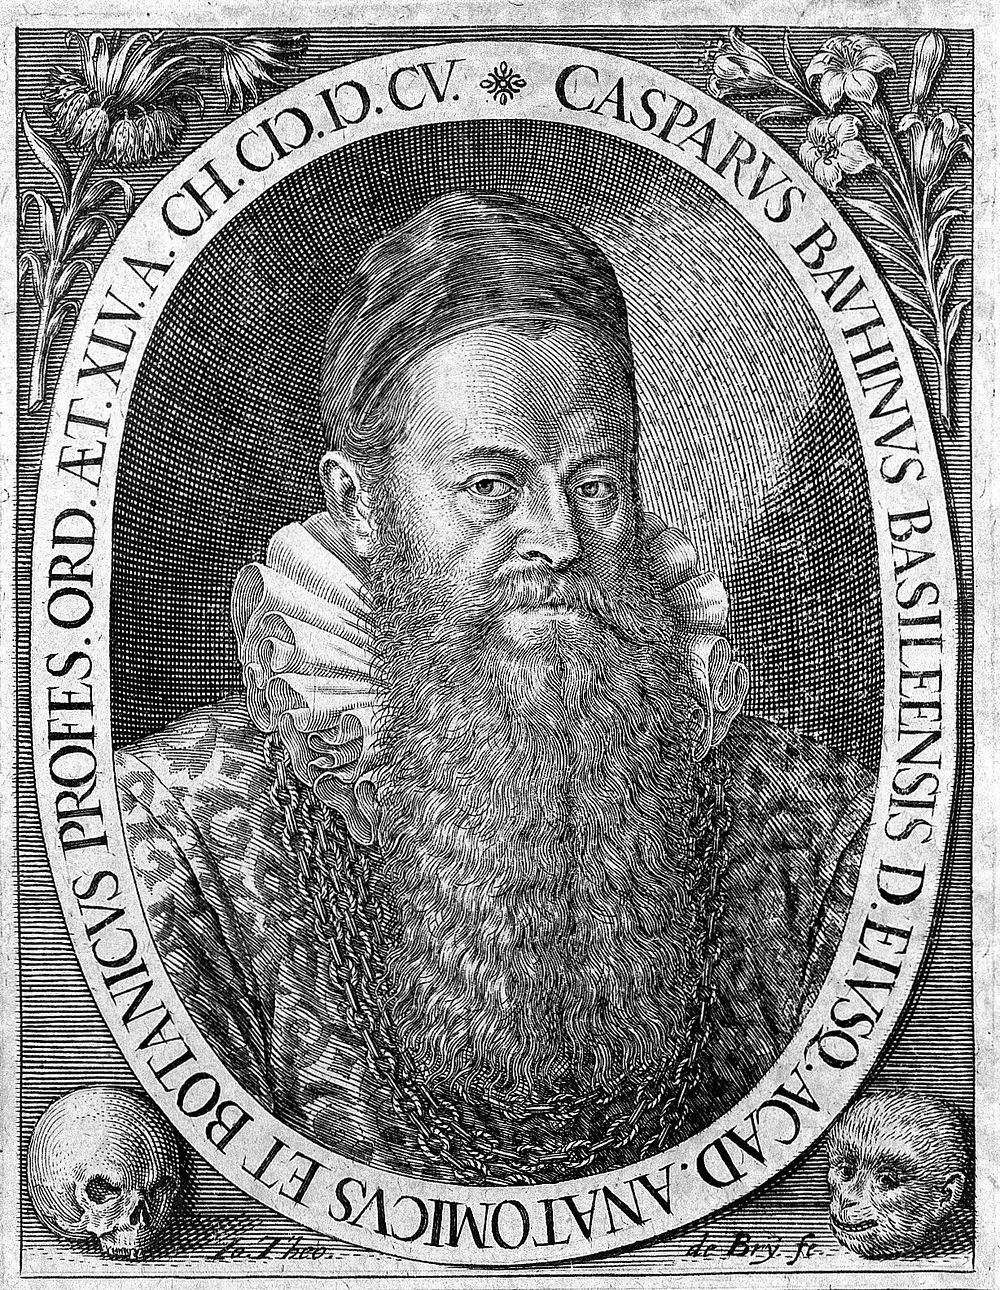 Caspar Bauhin. Line engraving by J.T. de Bry.